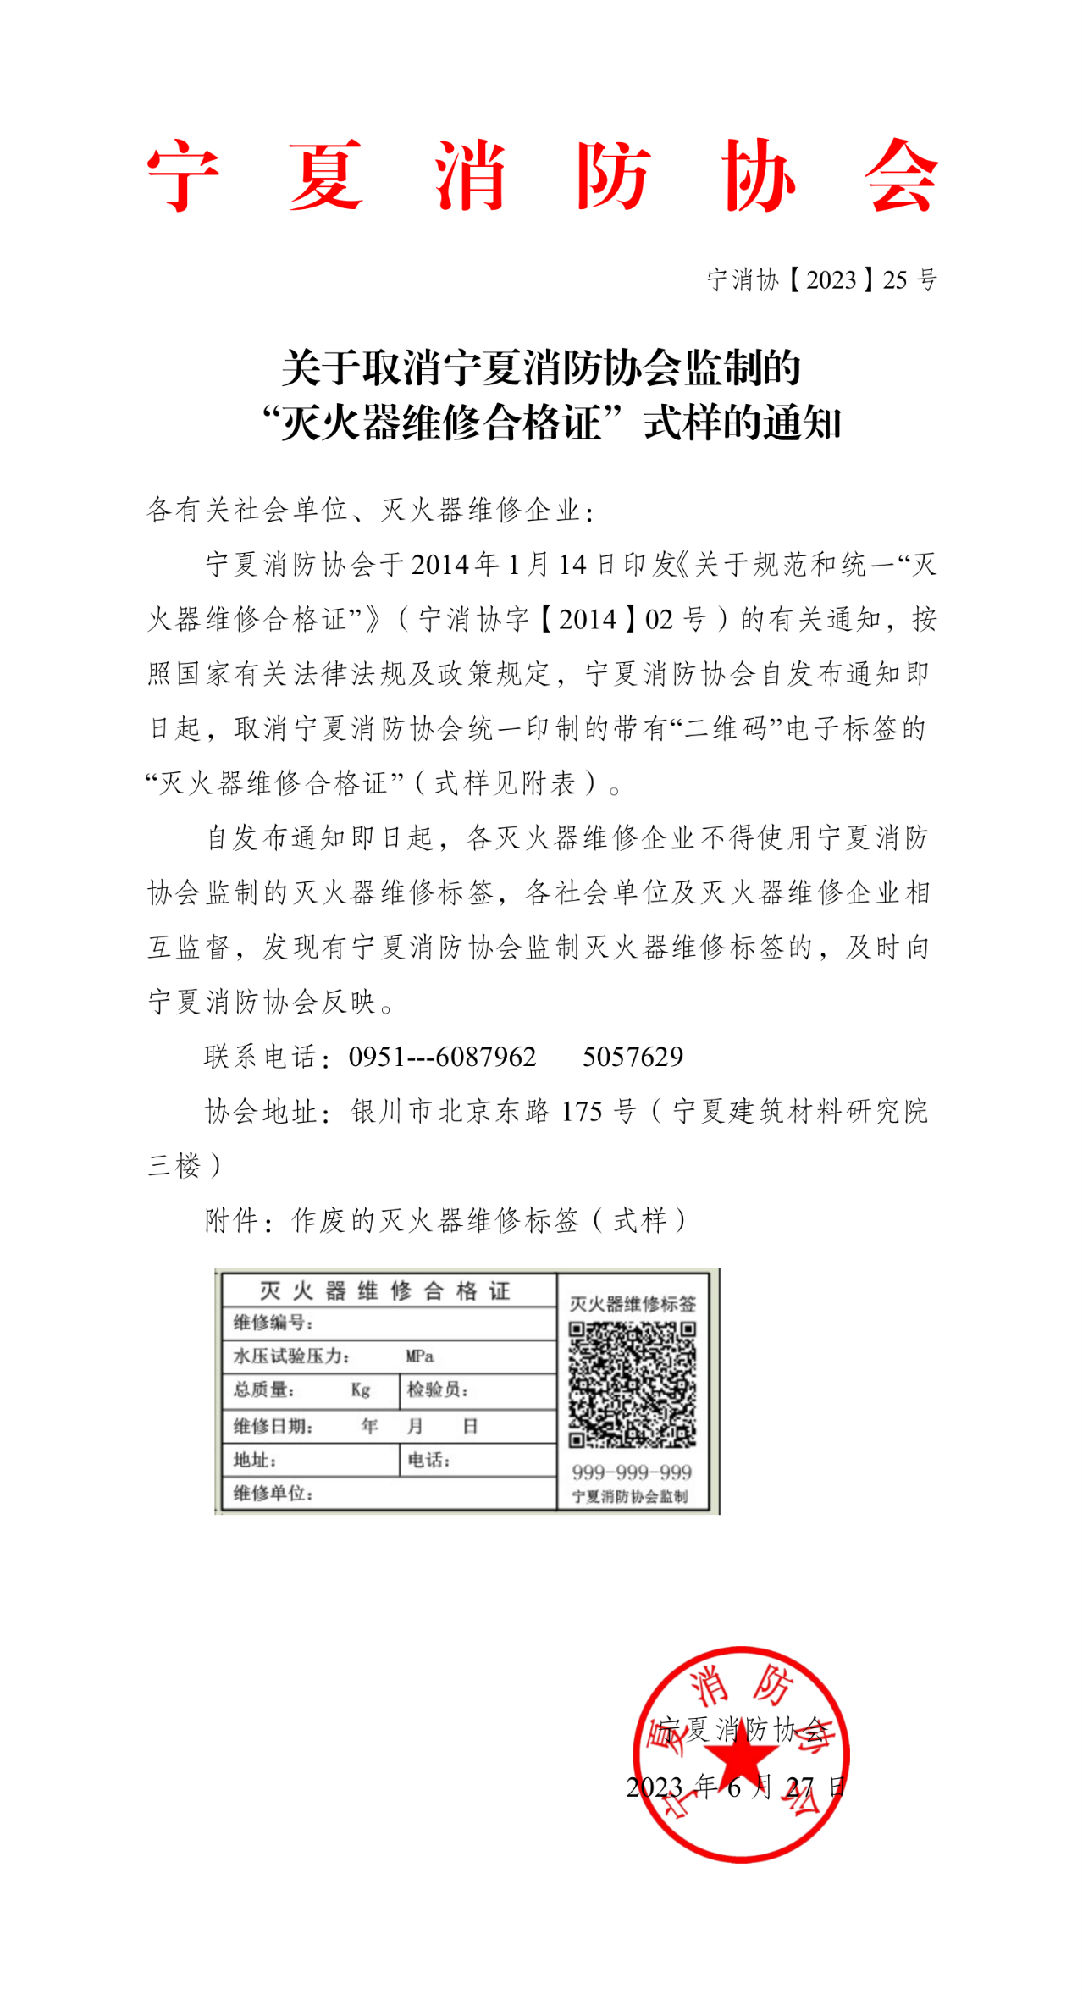 宁夏消防协会：关于取消宁夏消防协会监制的“灭火器维修合格证”式样的通知